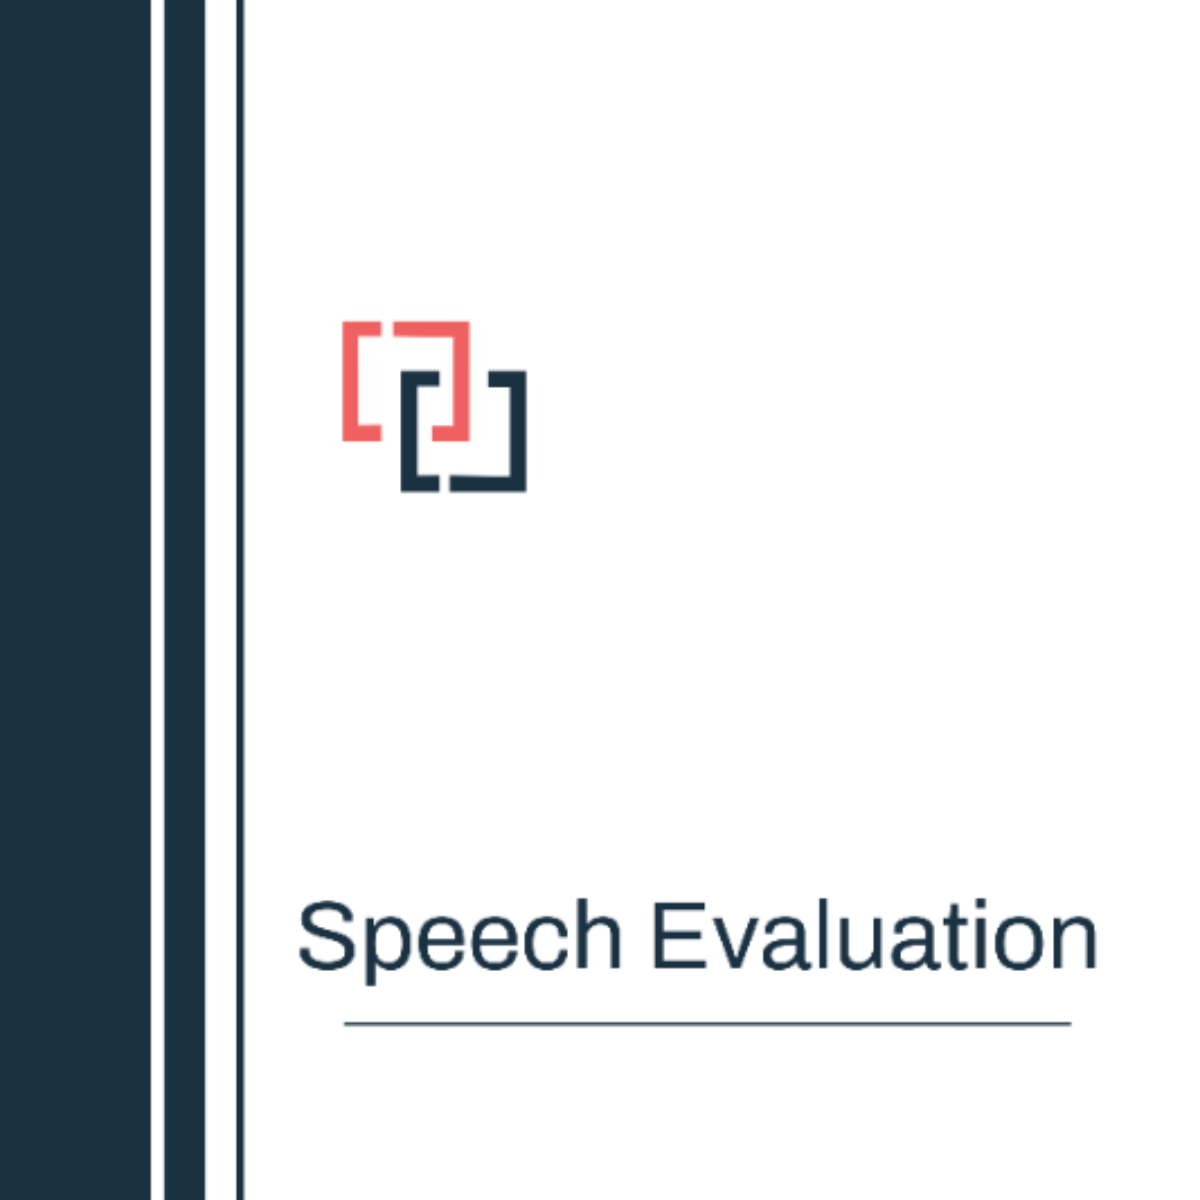 Speech Evaluation Template